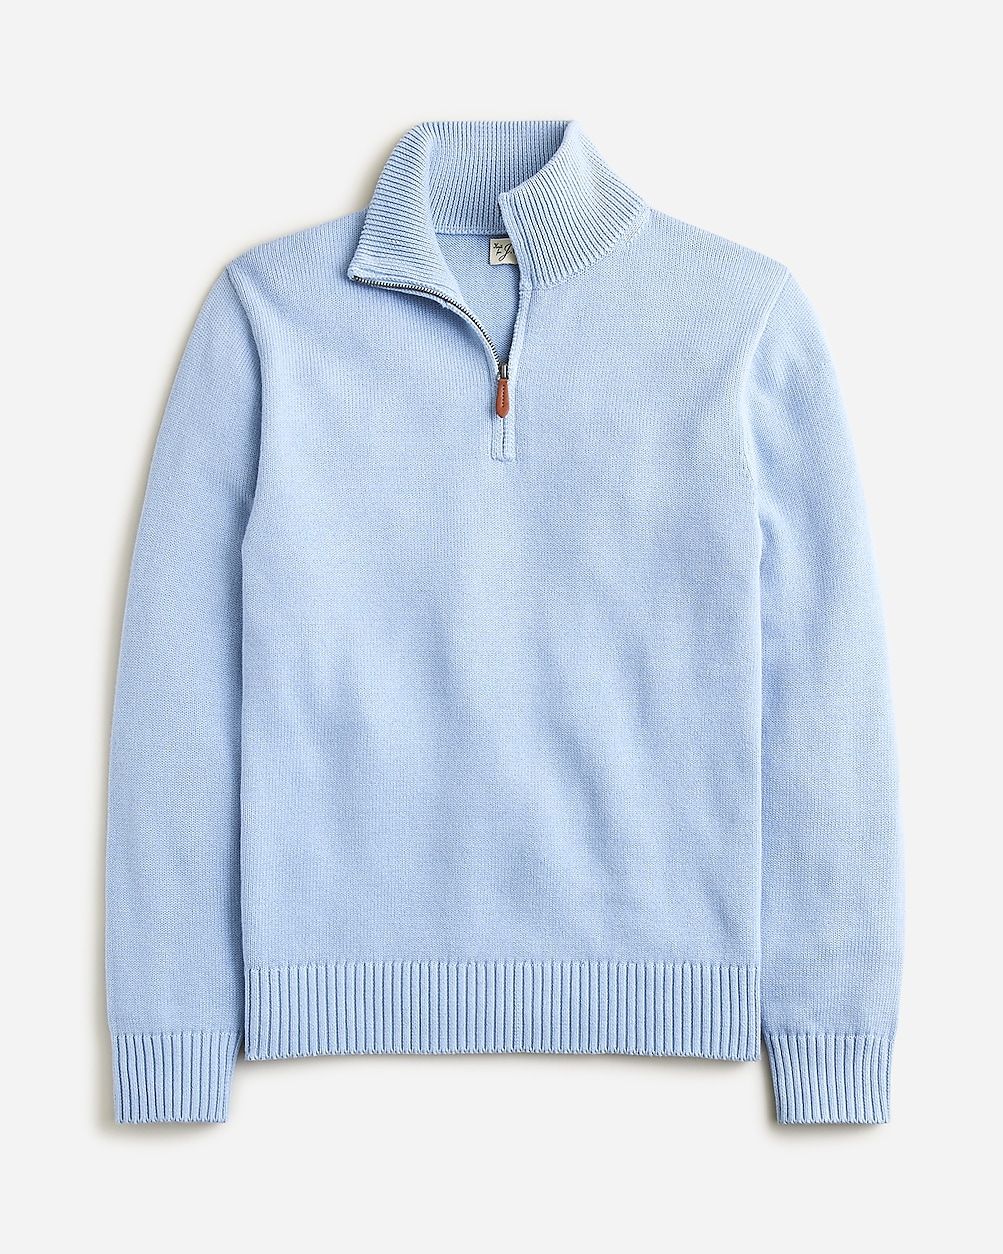 Heritage cotton half-zip sweater | J.Crew US